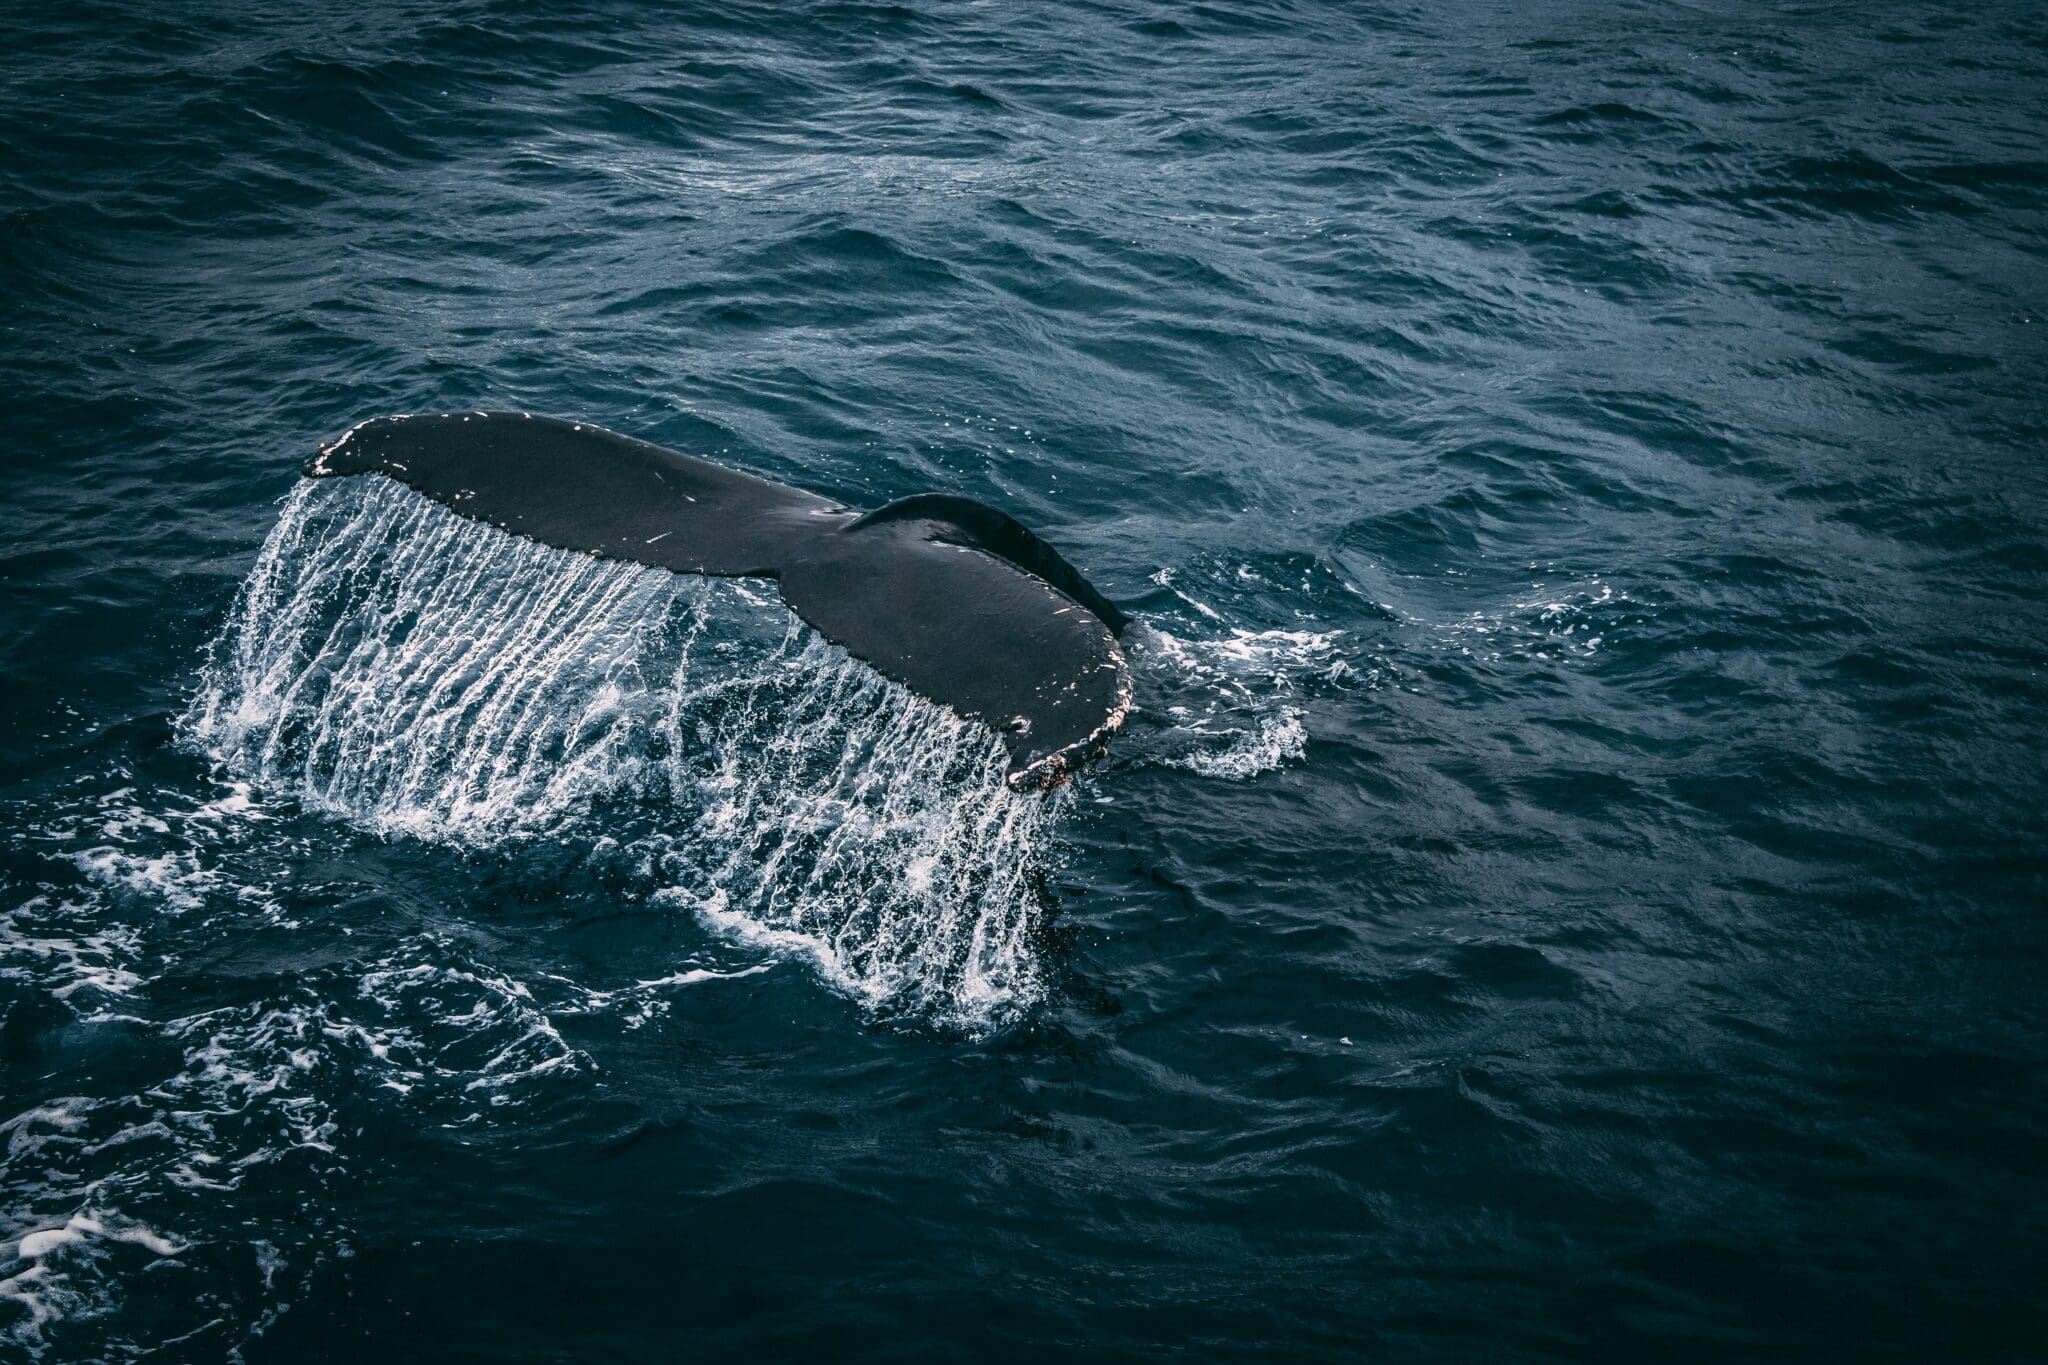 Ogon wieloryba nurkującego pod wodę